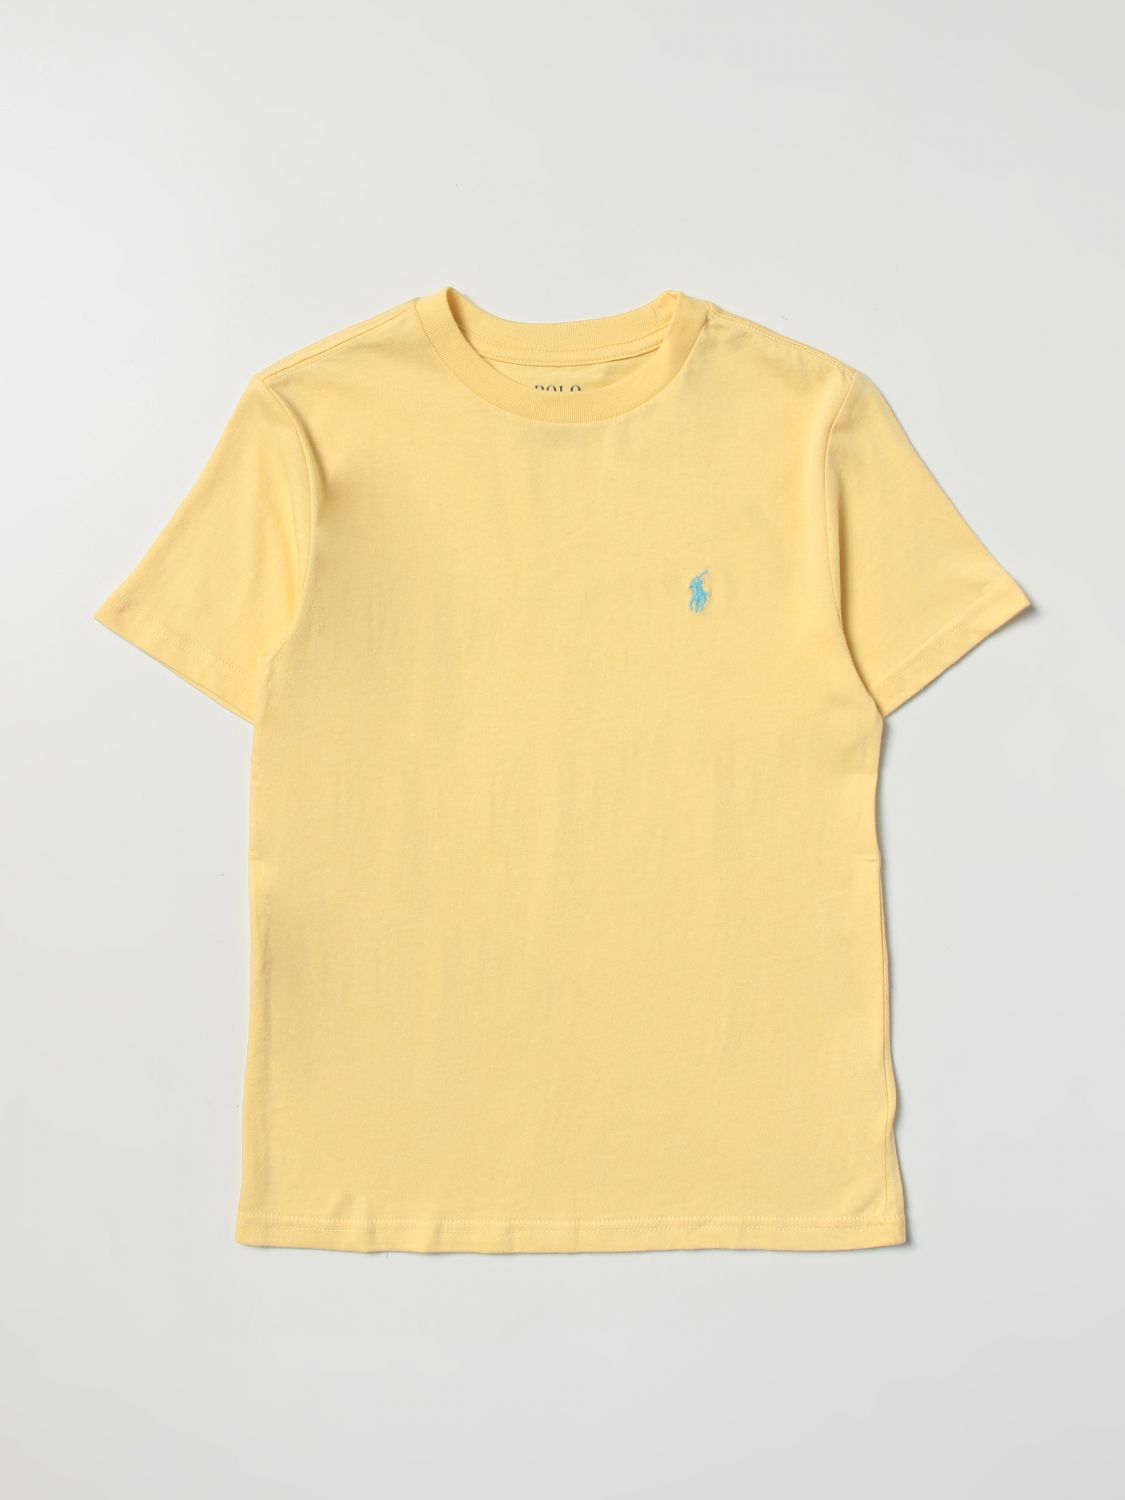 POLO RALPH LAUREN: t-shirt for boys - Yellow | Polo Ralph Lauren t ...